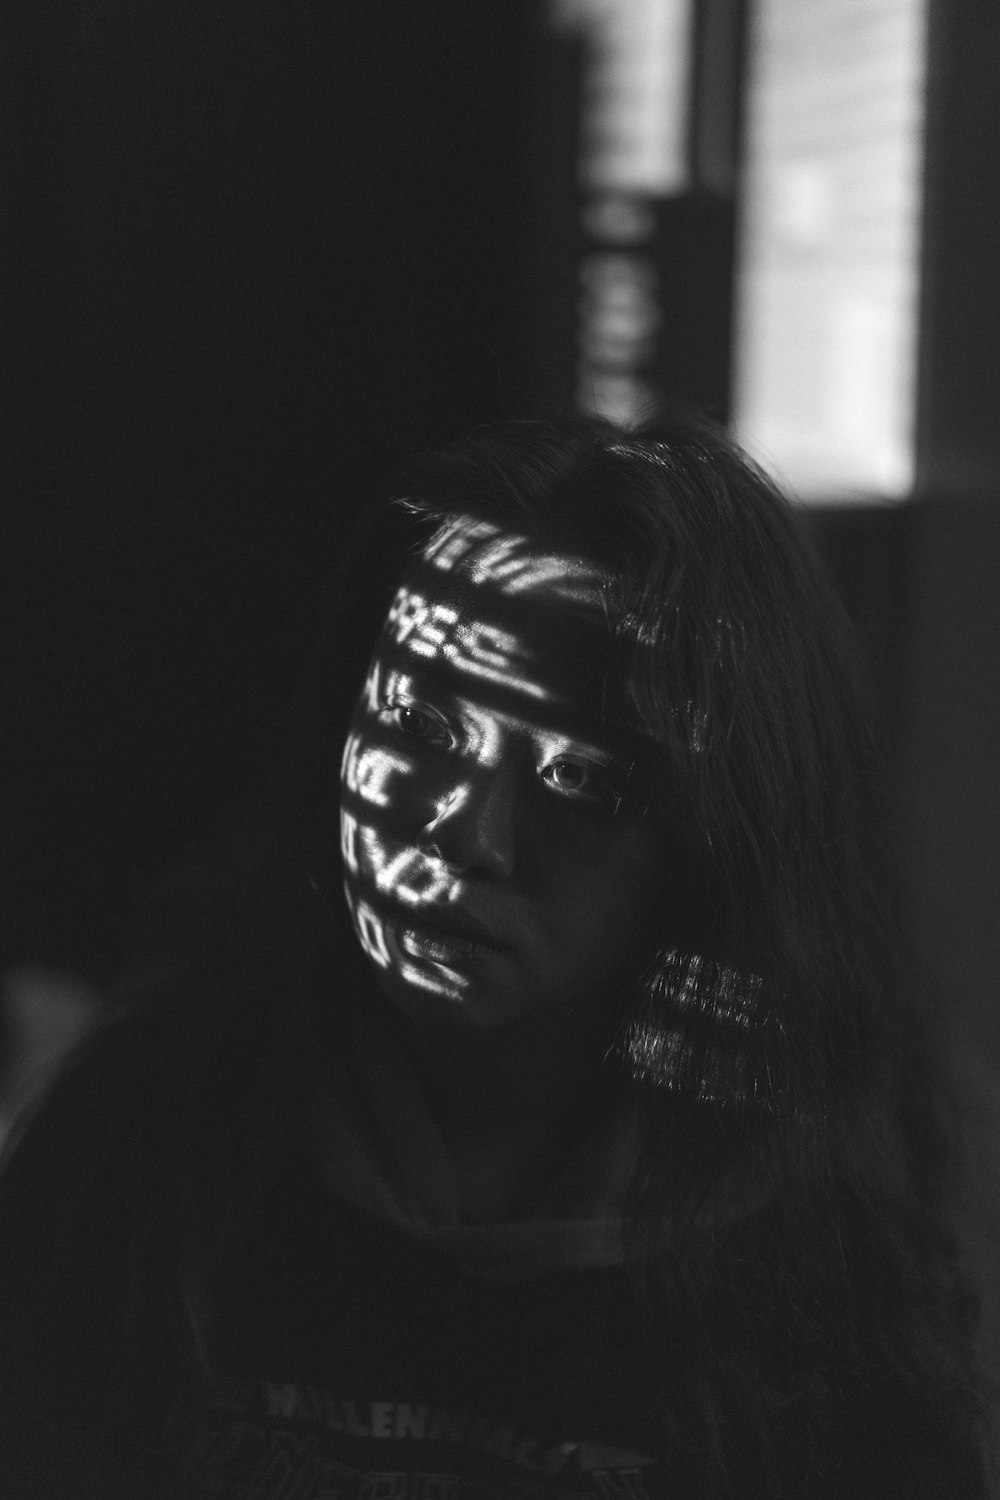 얼굴 페인트를 칠한 여성의 그레이스케일 사진